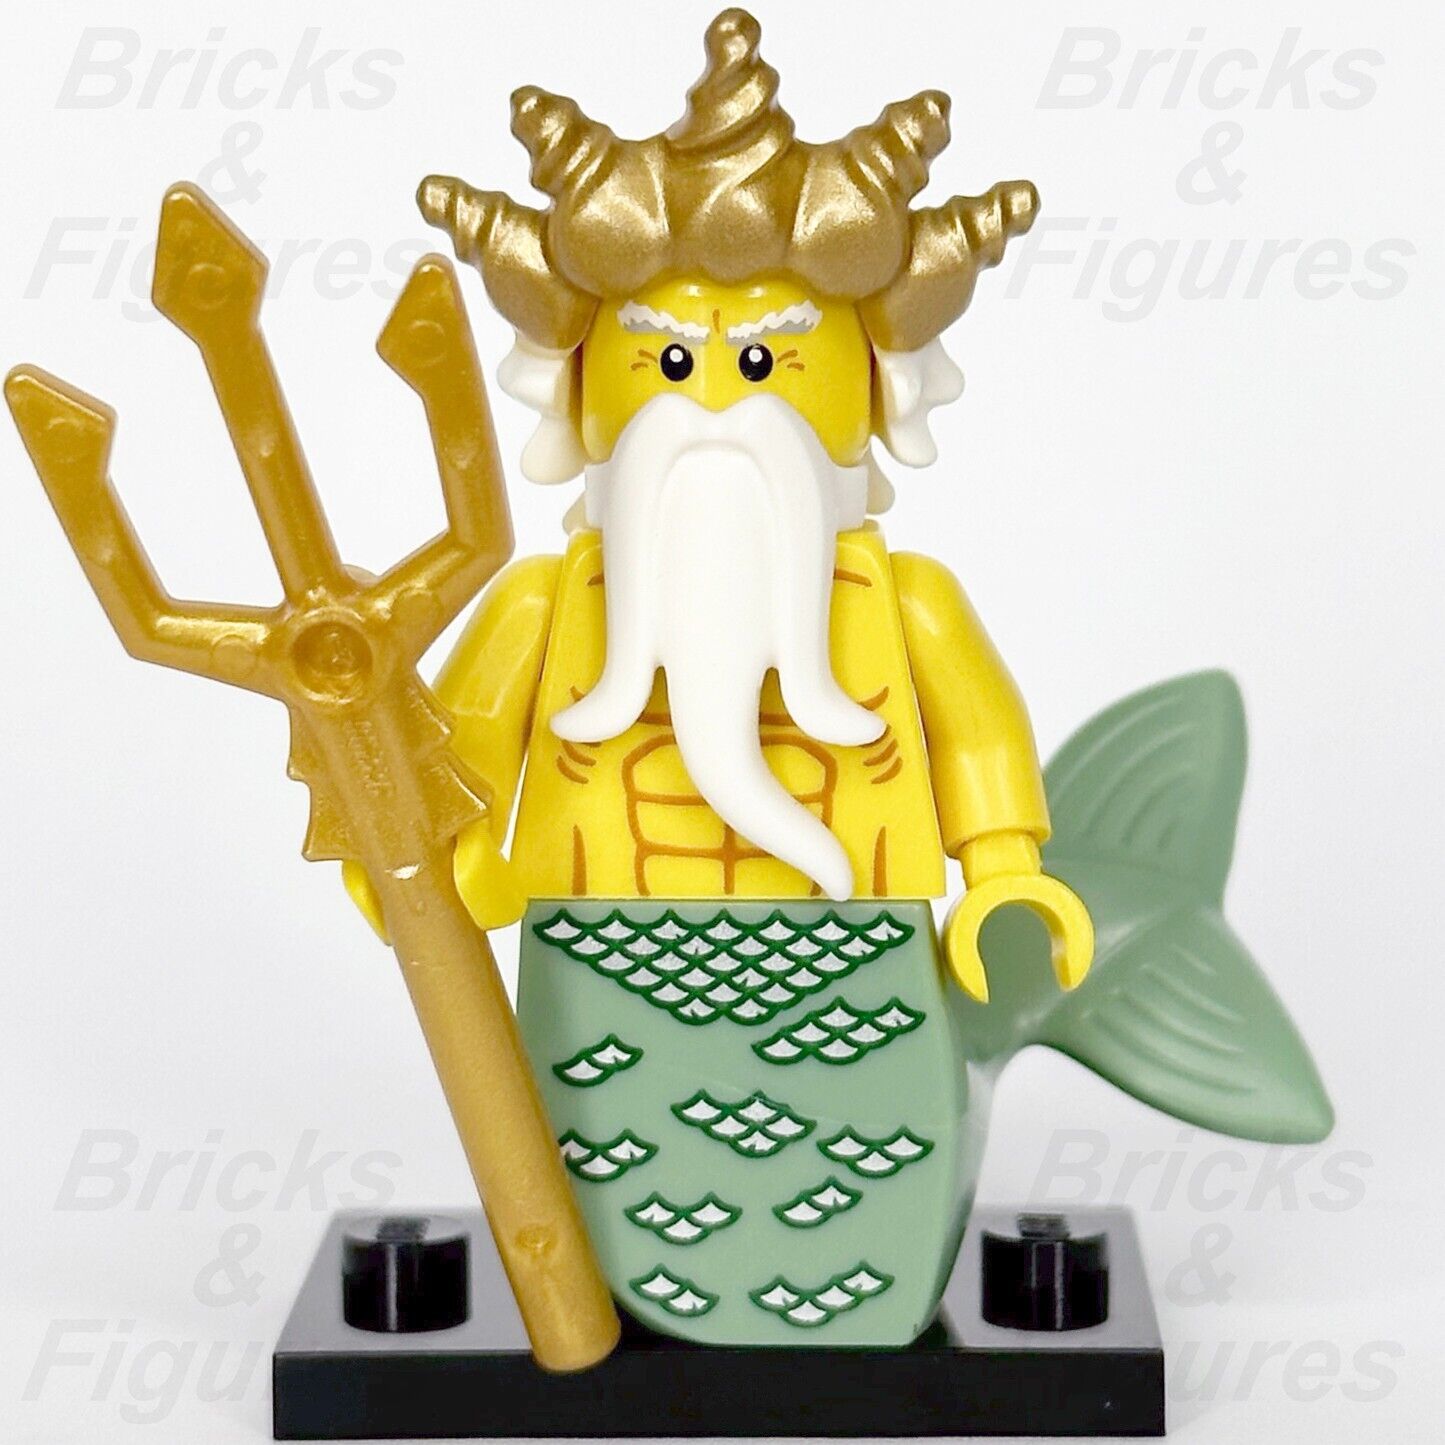 LEGO Ocean King Minifigure Merman Collectible Series 7 8831 col07-5 Mermaid #5 - Bricks & Figures